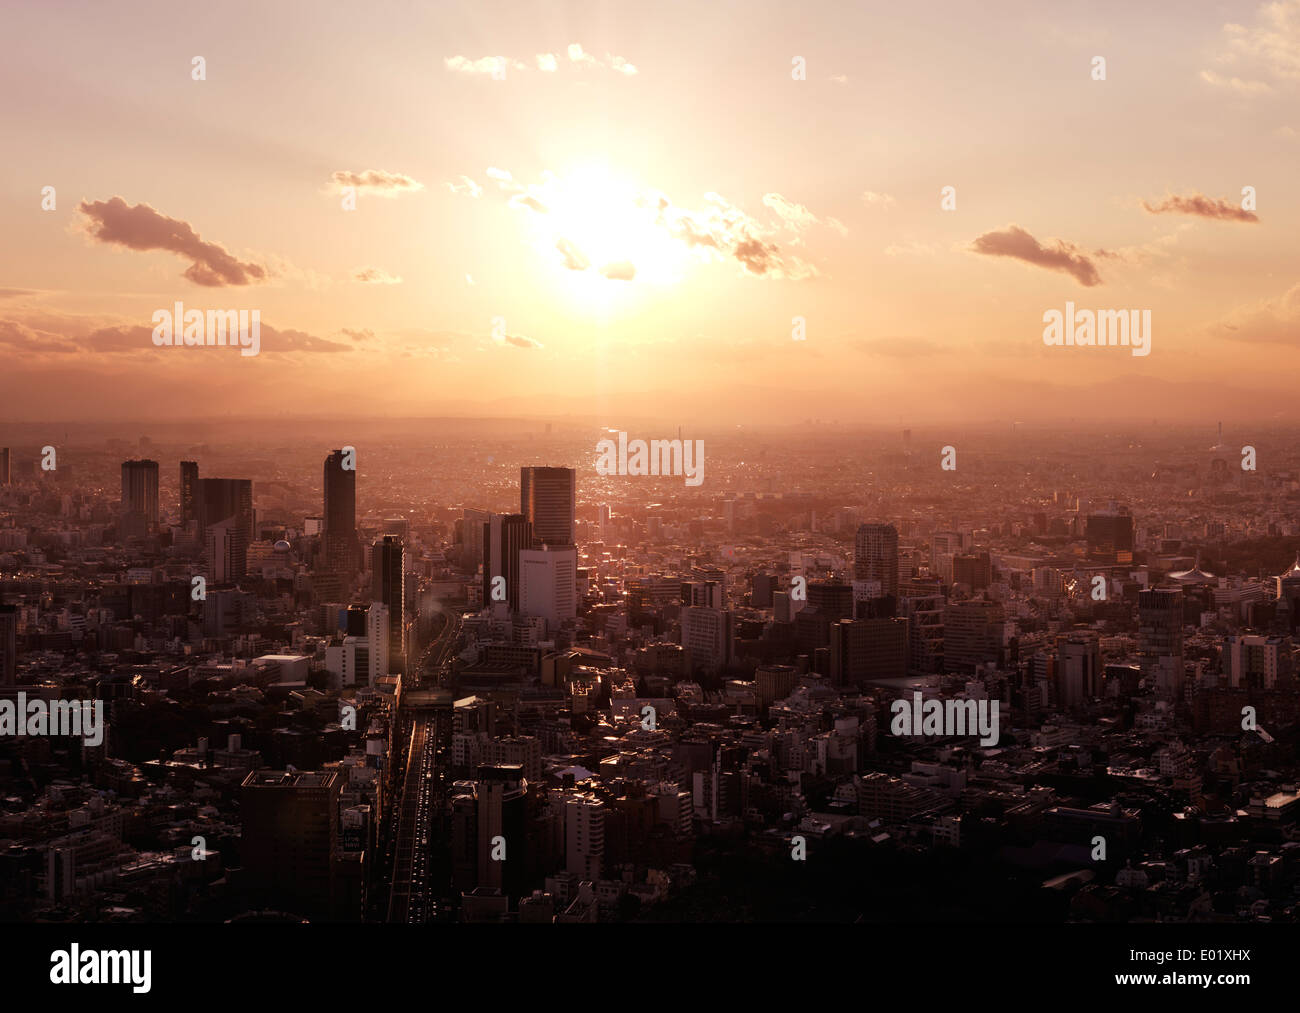 Licenza disponibile alle MaximImages.com:00 - scenografico scenario del tramonto aereo del paesaggio della città di Tokyo illuminato dal sole giallo brillante. Shibuya, Tokyo, Giappone. Foto Stock